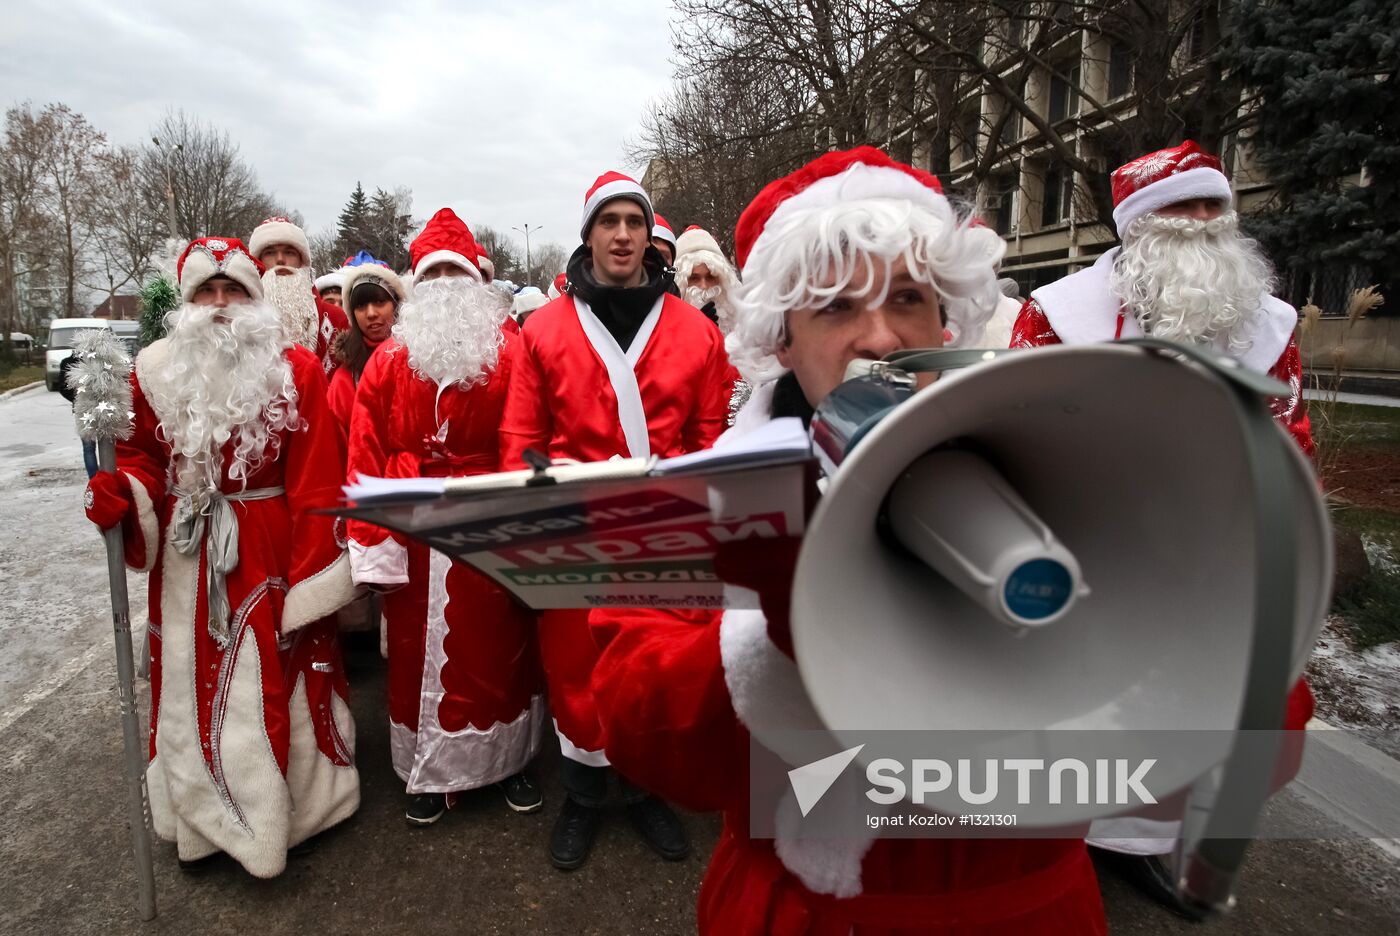 "Invasion of Ded Moroz's" event in Krasnodar